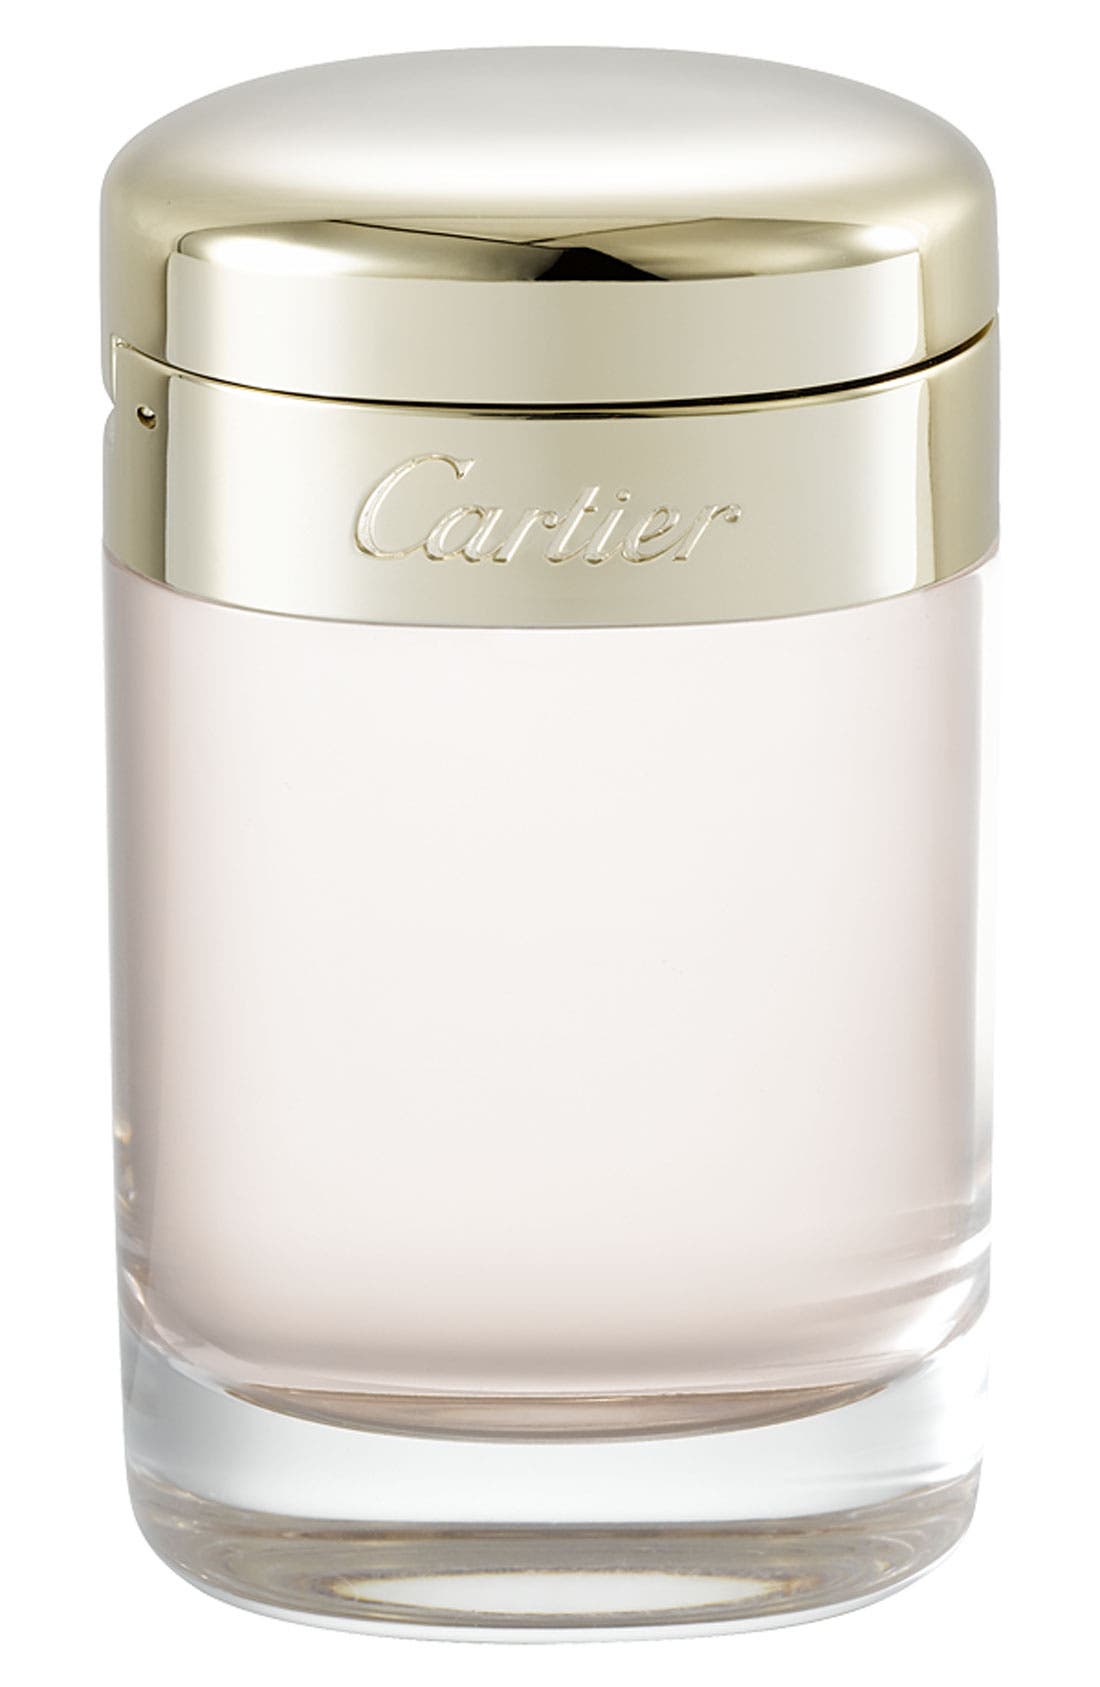 Cartier Baiser Vole Eau de Parfum at Nordstrom, Size 1.6 Oz